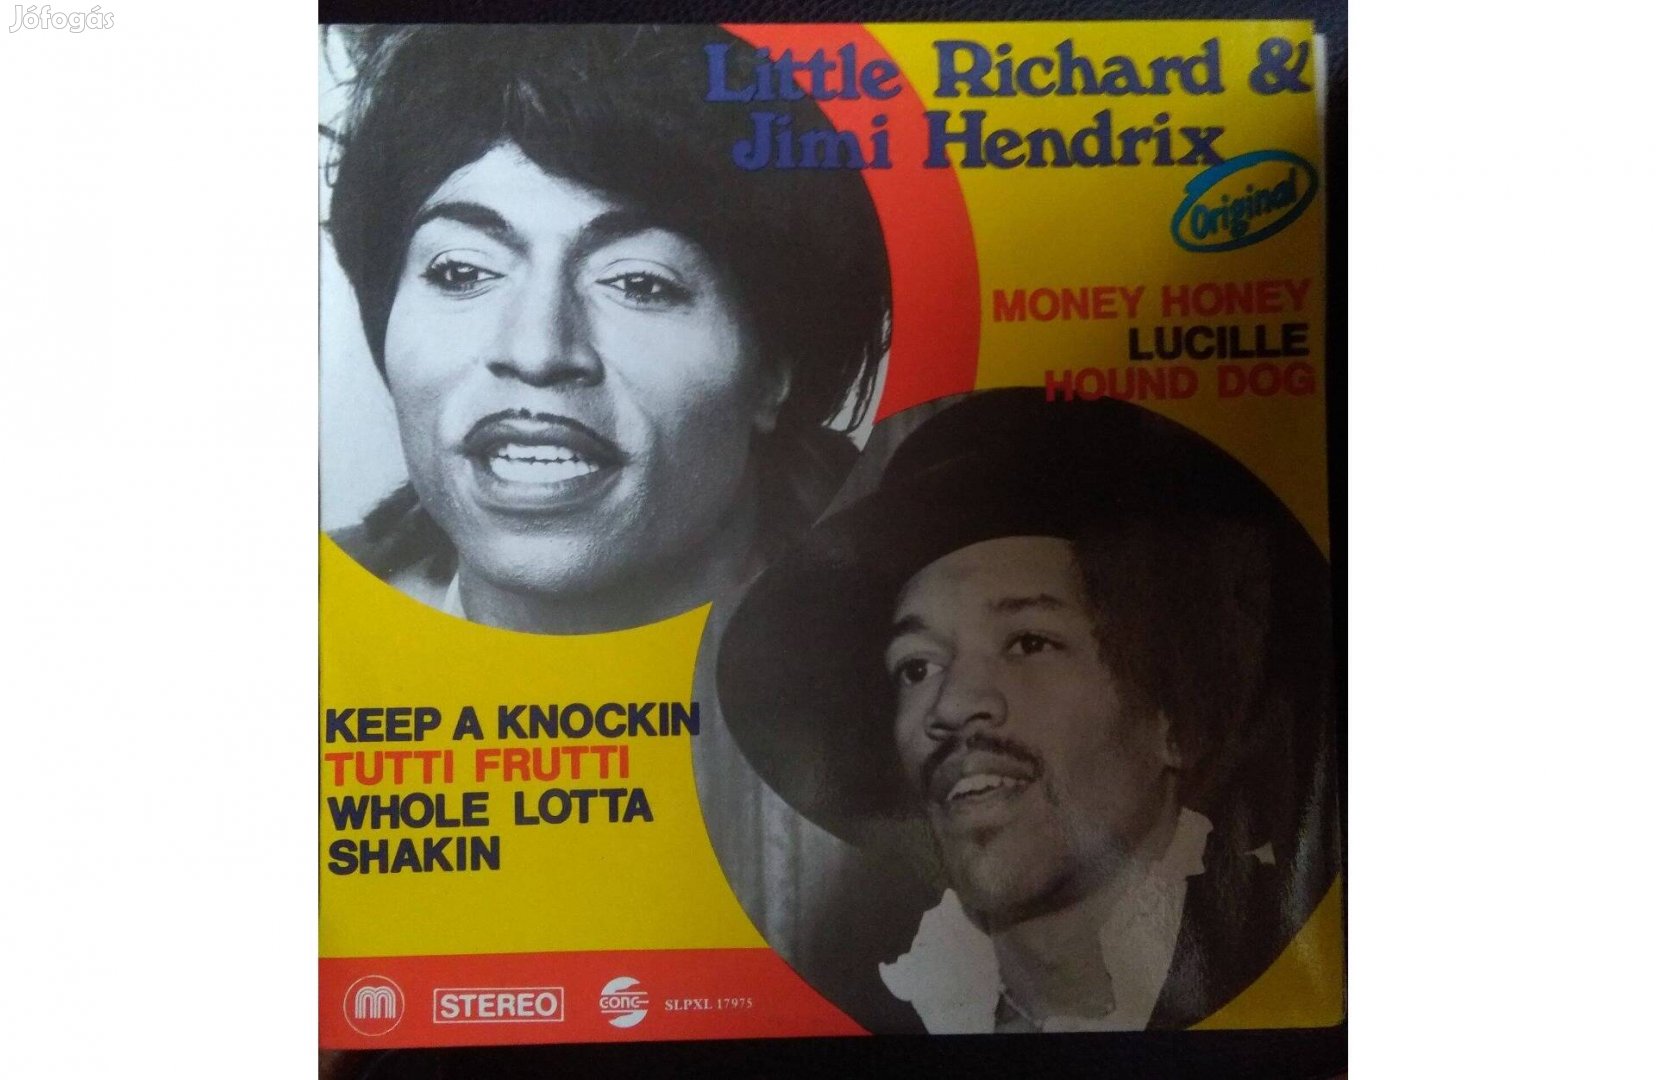 Jimi Hendrix bakelit hanglemez eladó